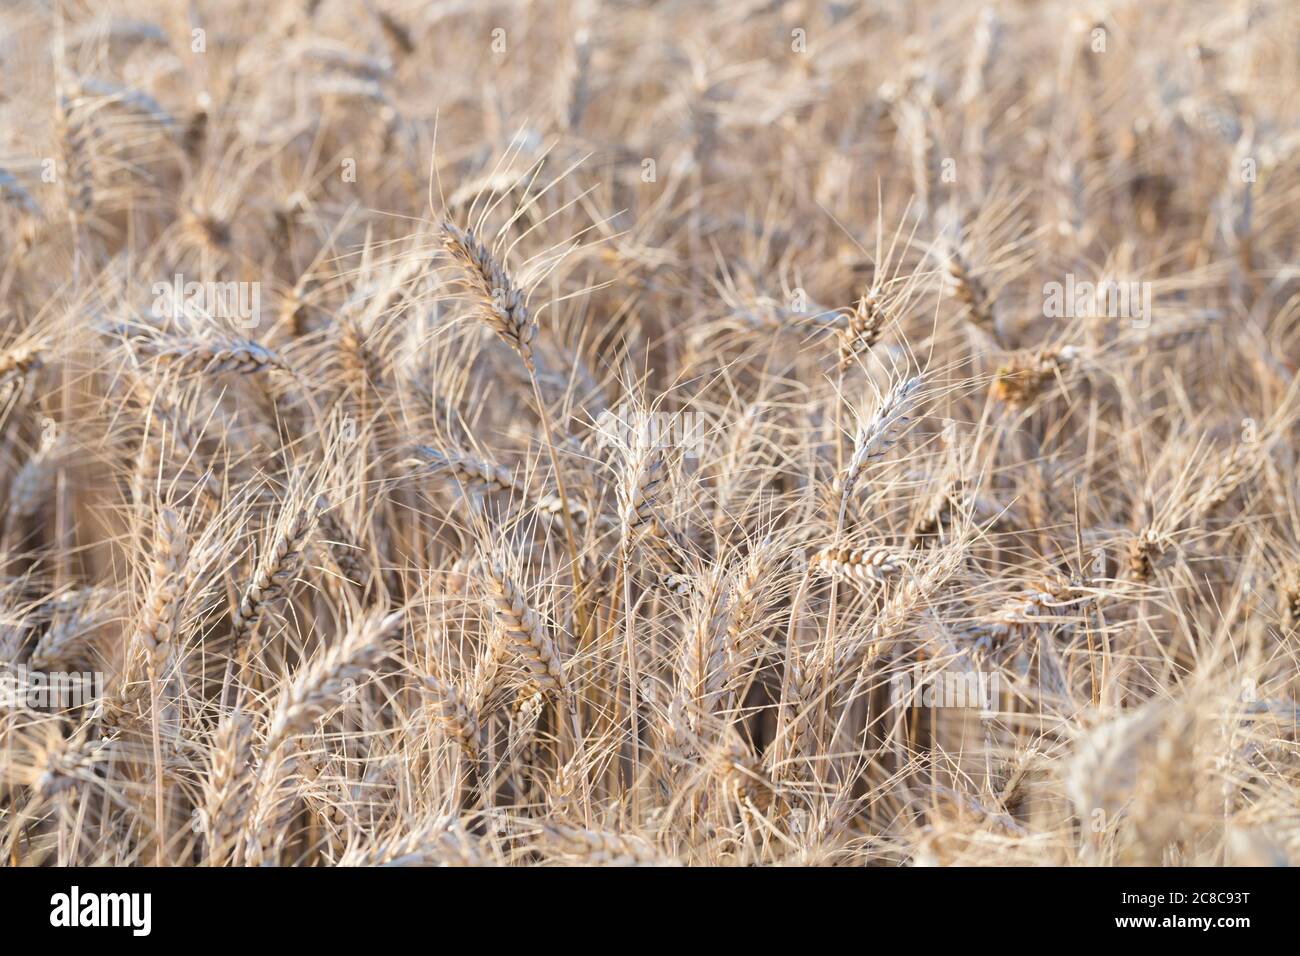 Wheat field, Italy Stock Photo